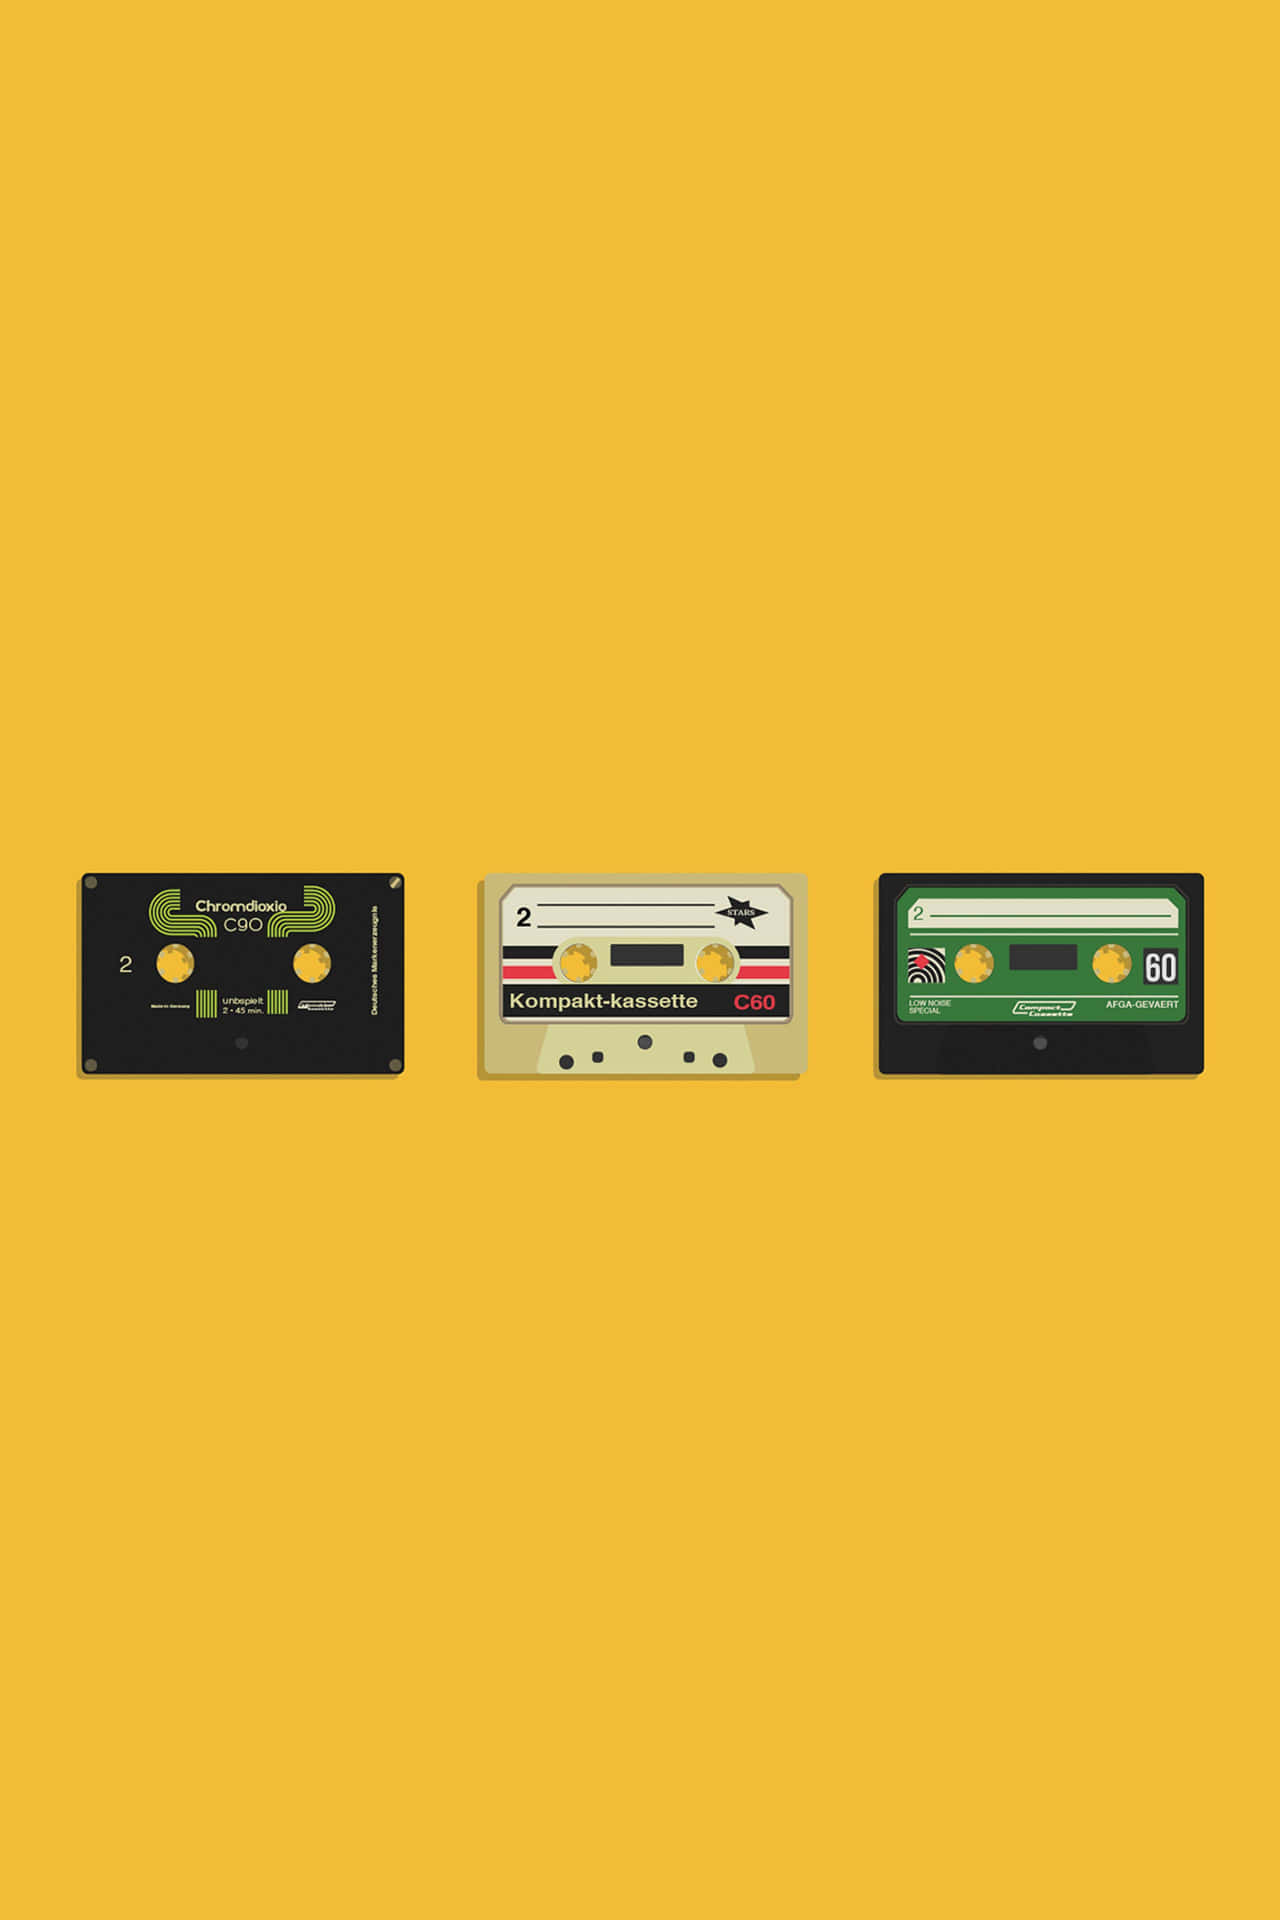 Vierkassetten Auf Einem Gelben Hintergrund Wallpaper